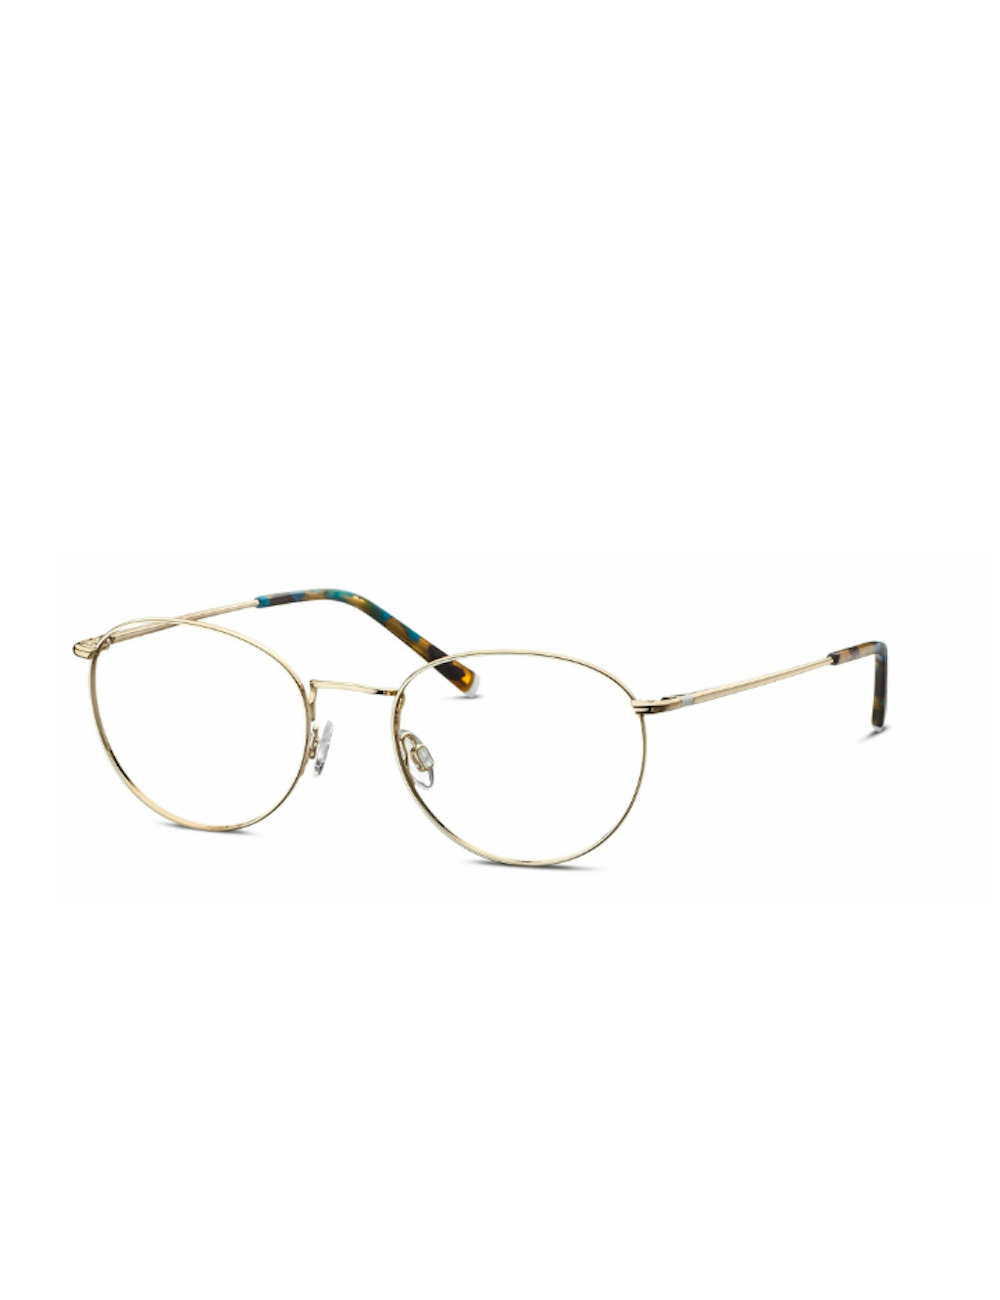 Humphrey's eyewear 582273 29 round metal eyeglasses